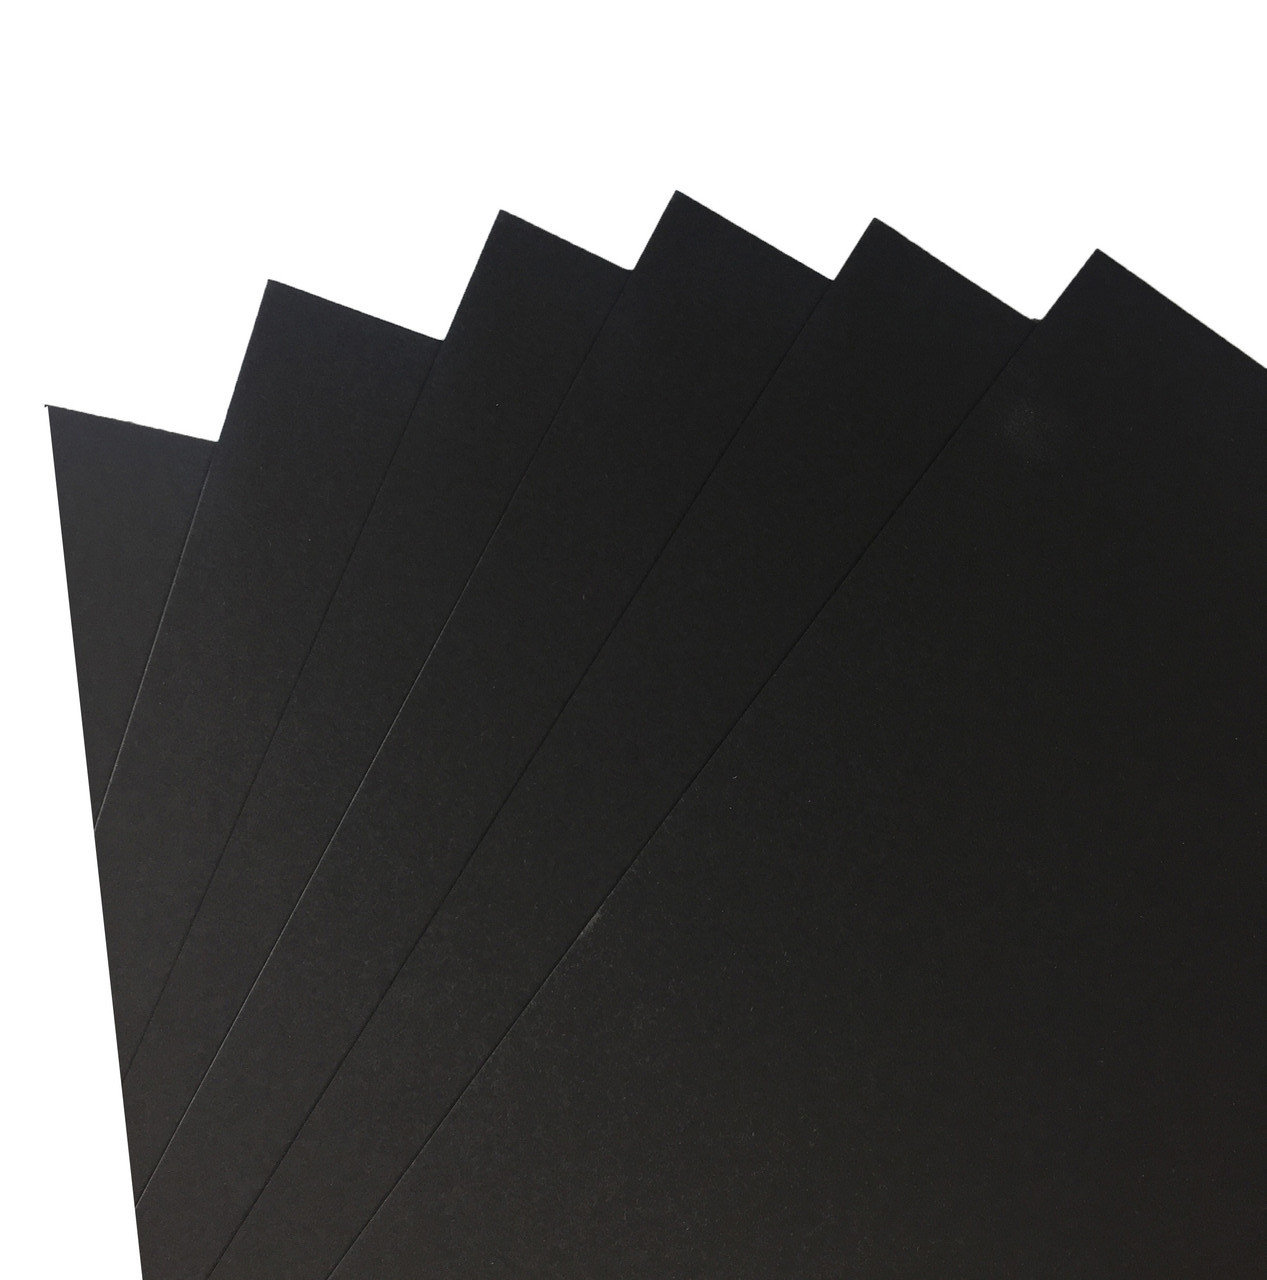 На полоске черного картона с помощью. Бумага черная длясухих техникgrafart blackмалевичь,150г/м. Черный картон. Черная бумага. Черная плотная бумага.